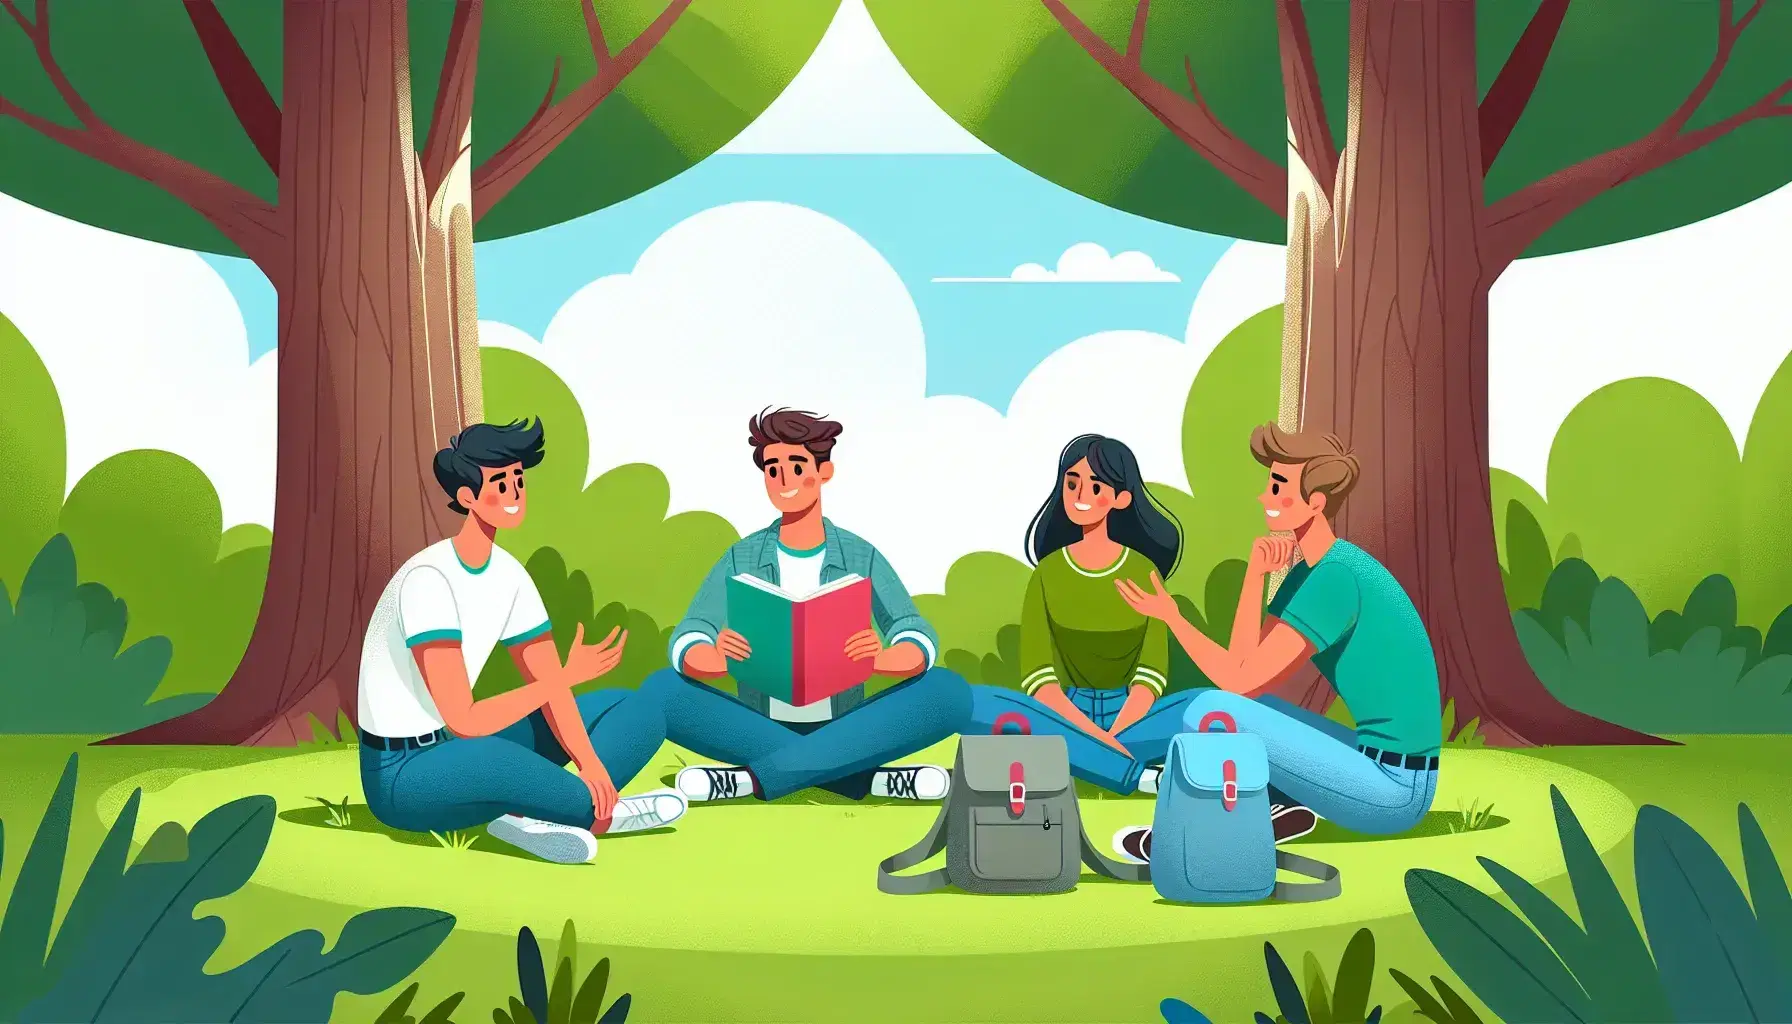 Grupo de tres personas sentadas en círculo sobre césped en un parque, conversando animadamente y gesticulando, con árboles y cielo despejado de fondo.